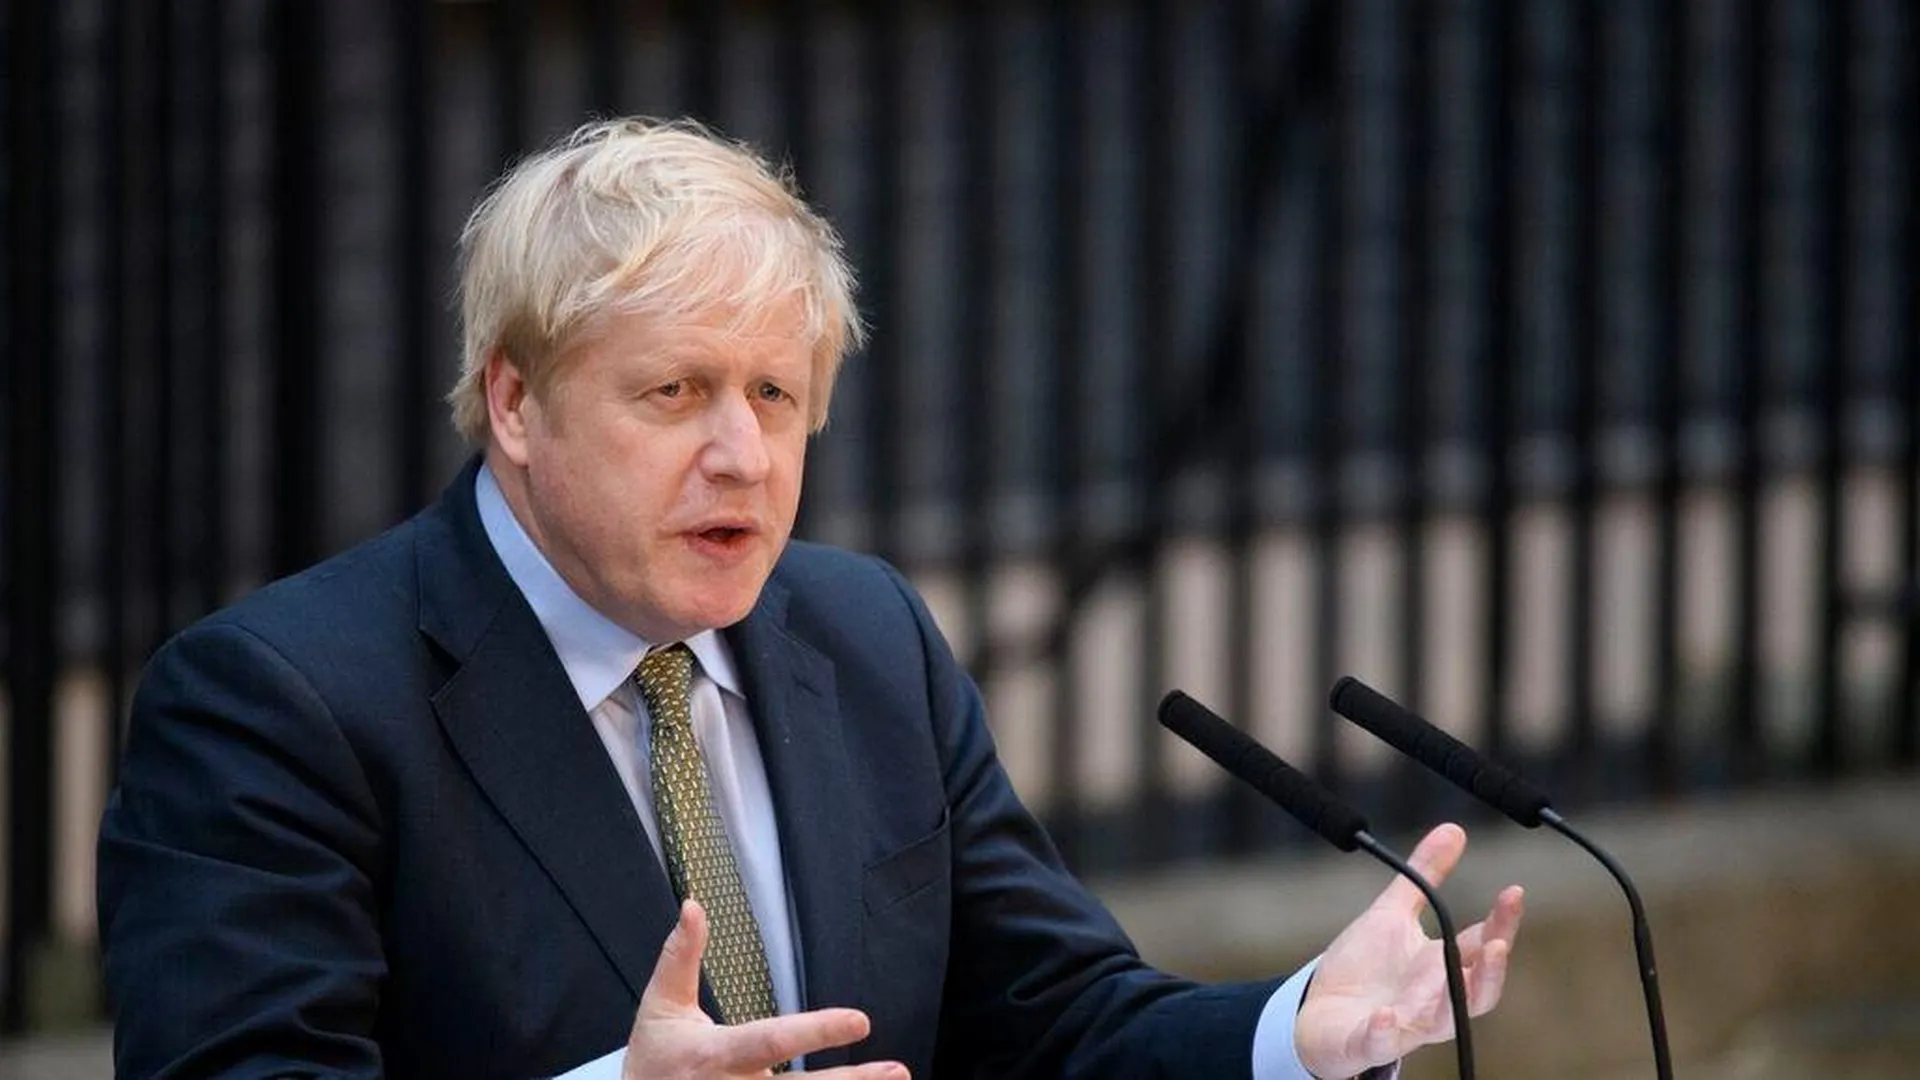 Джонсон вышел из гонки за пост премьер-министра Великобритании — СМИ